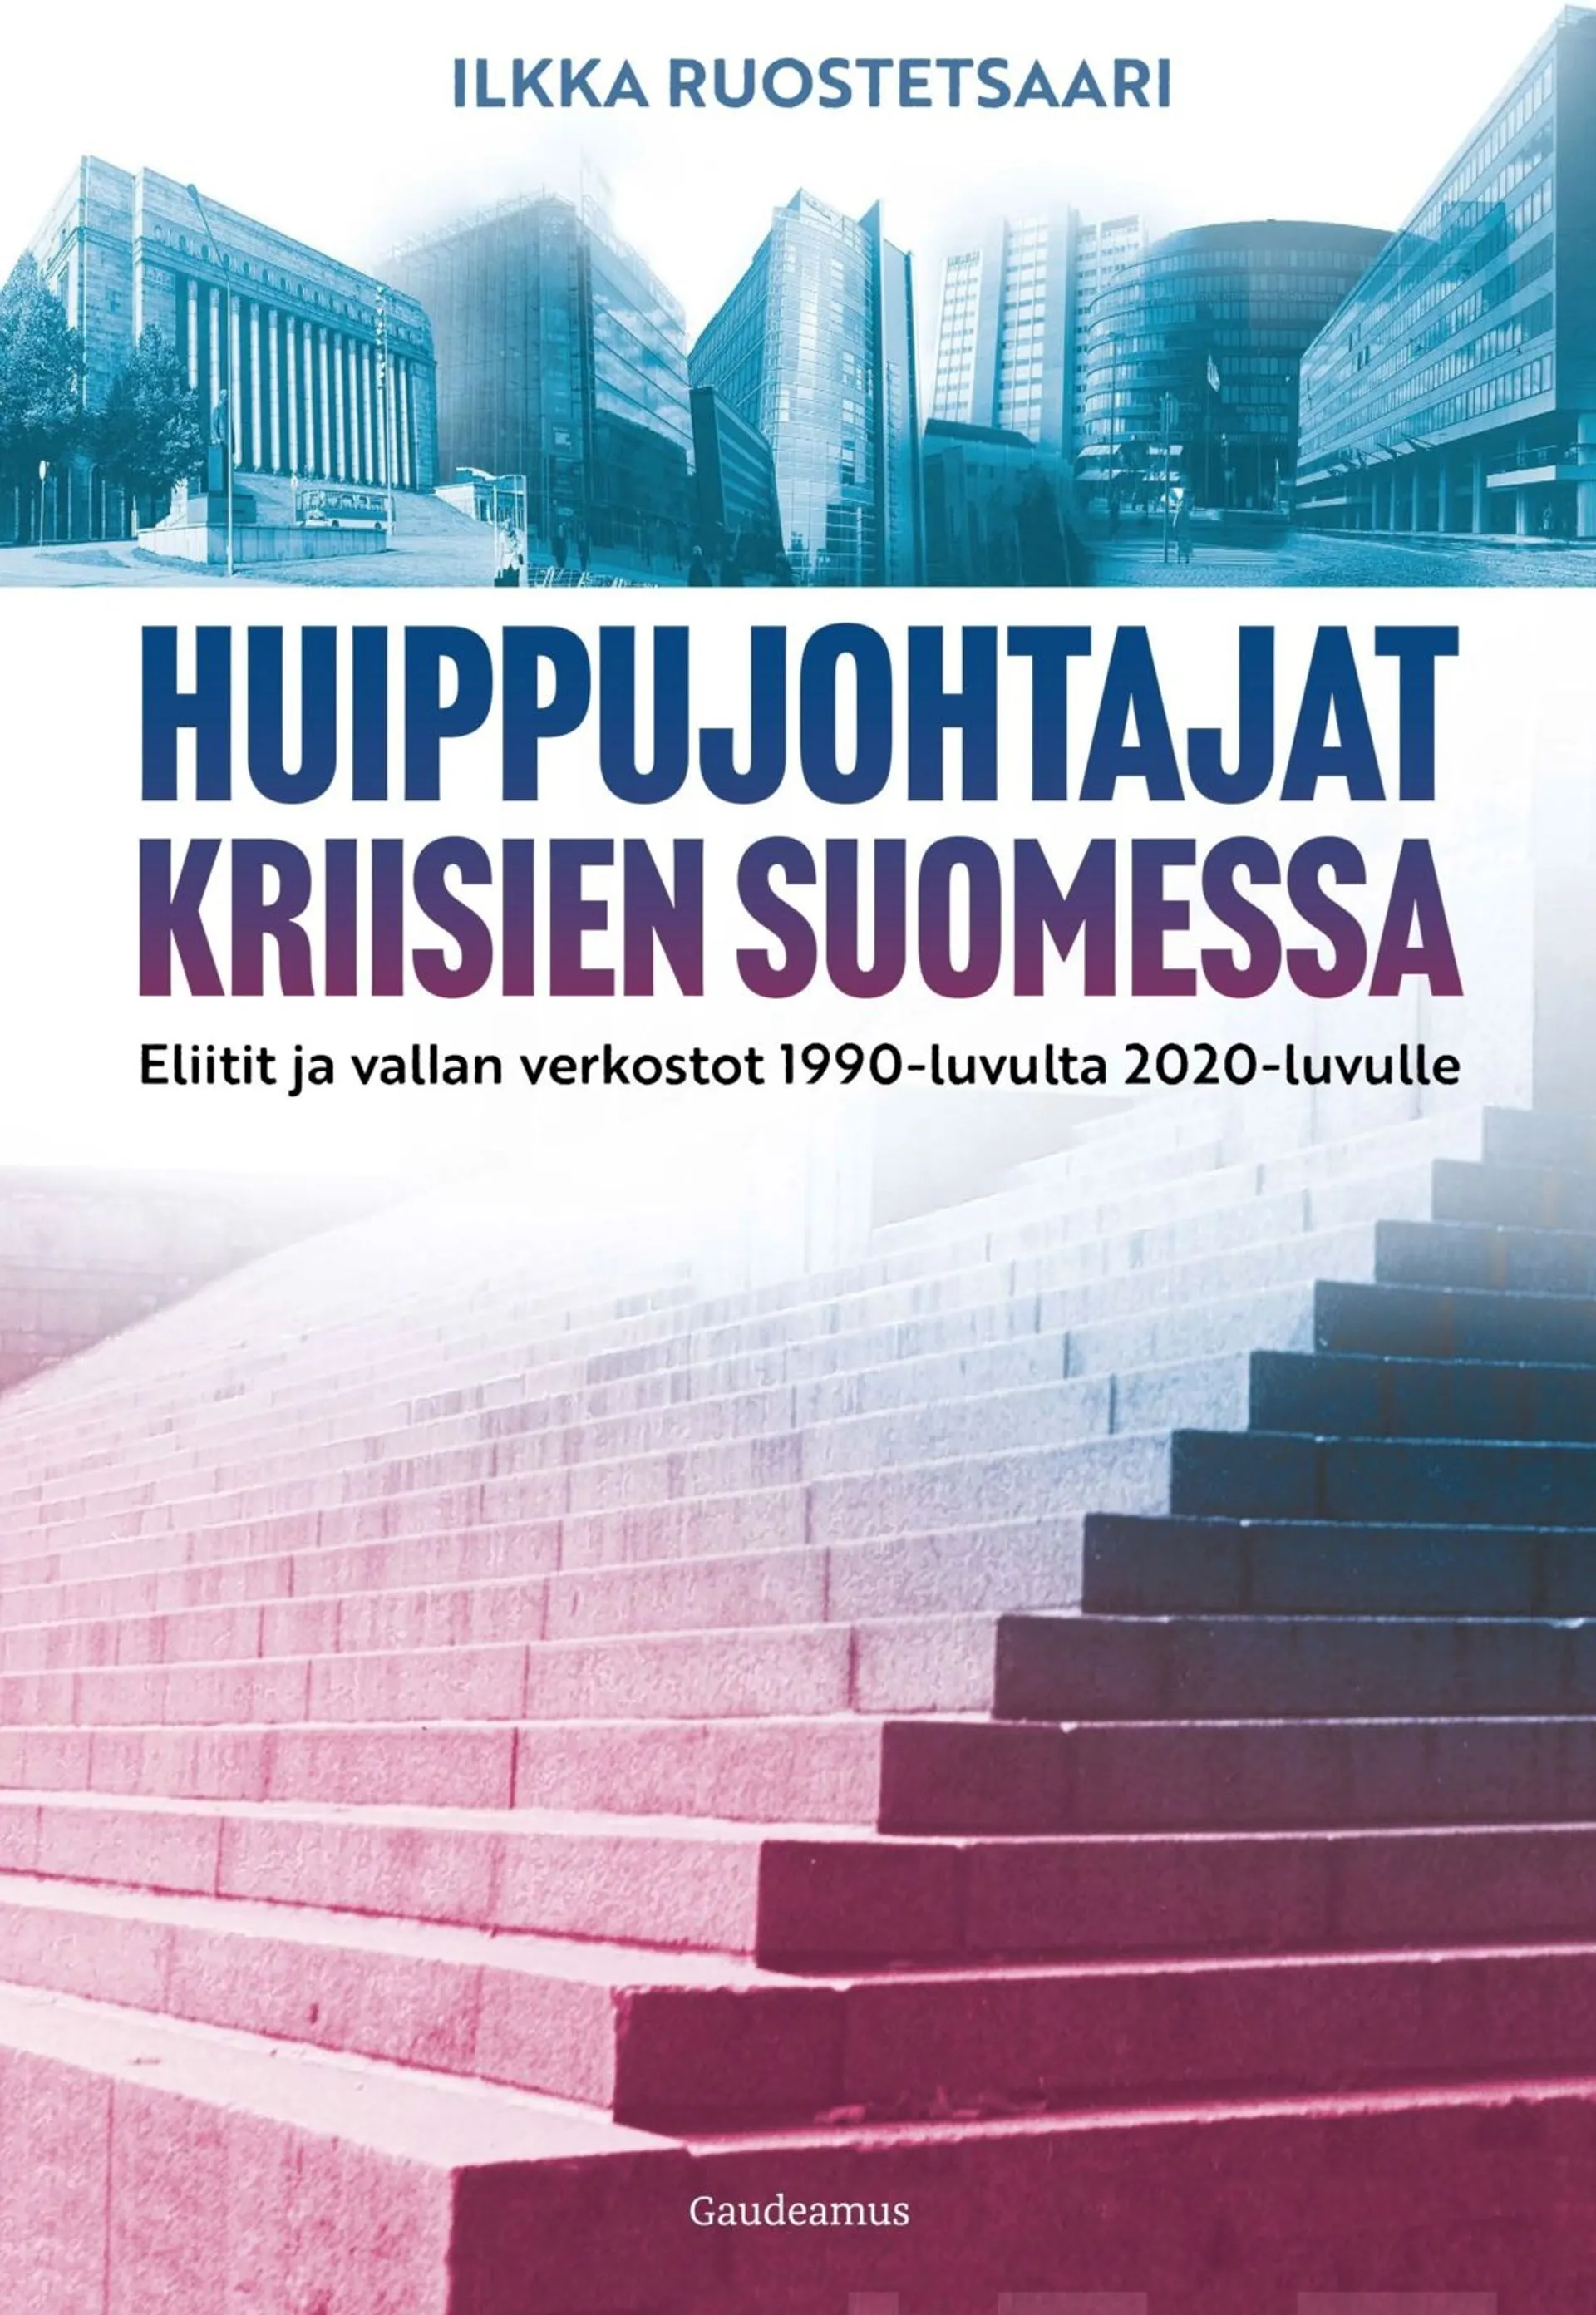 Ruostetsaari, Huippujohtajat kriisien Suomessa - Eliitit ja vallan verkostot 1990-luvulta 2020-luvulle